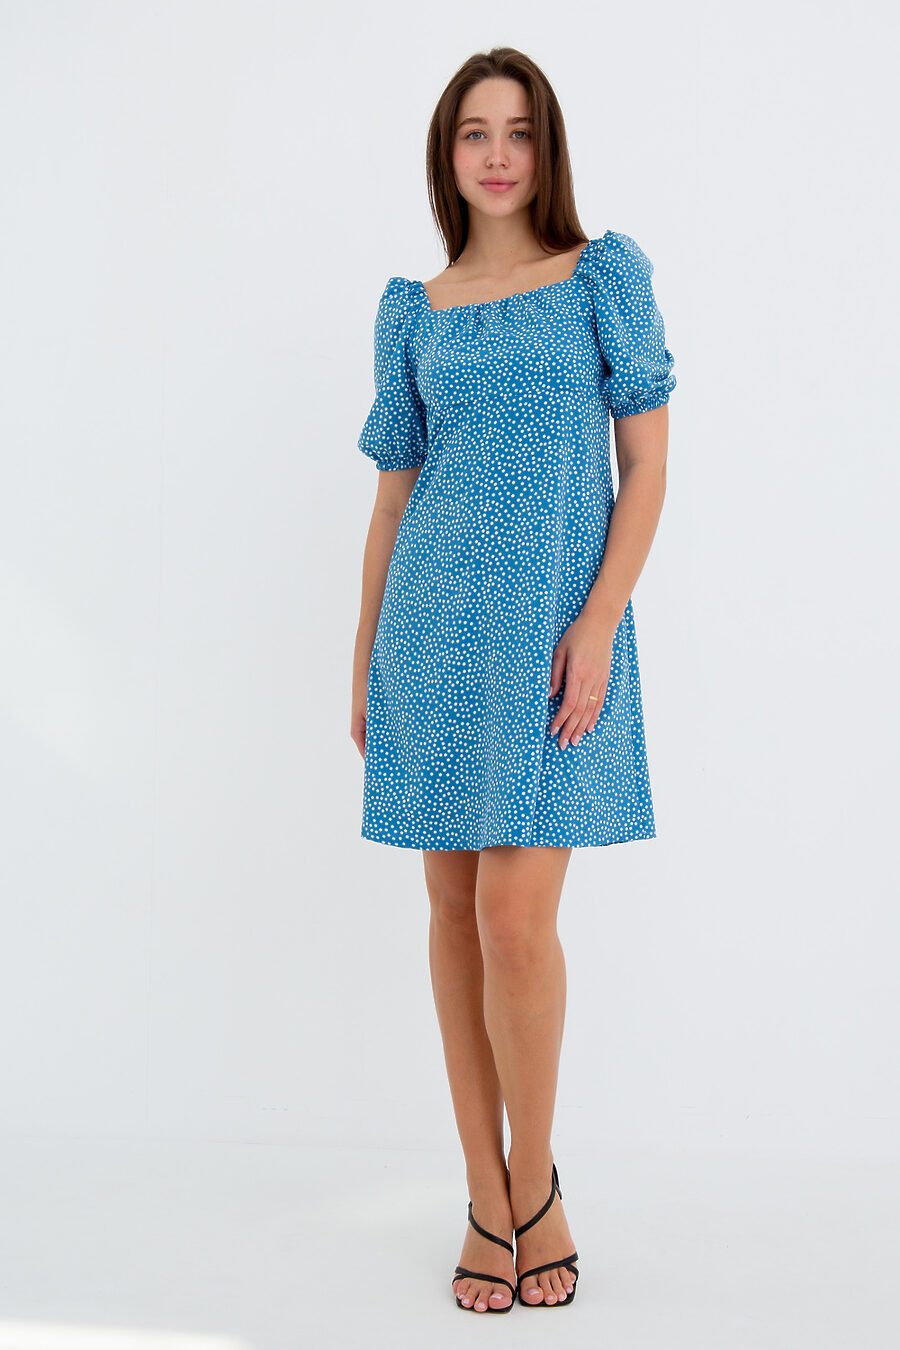 Платье П-5 для женщин НАТАЛИ 775464 купить оптом от производителя. Совместная покупка женской одежды в OptMoyo